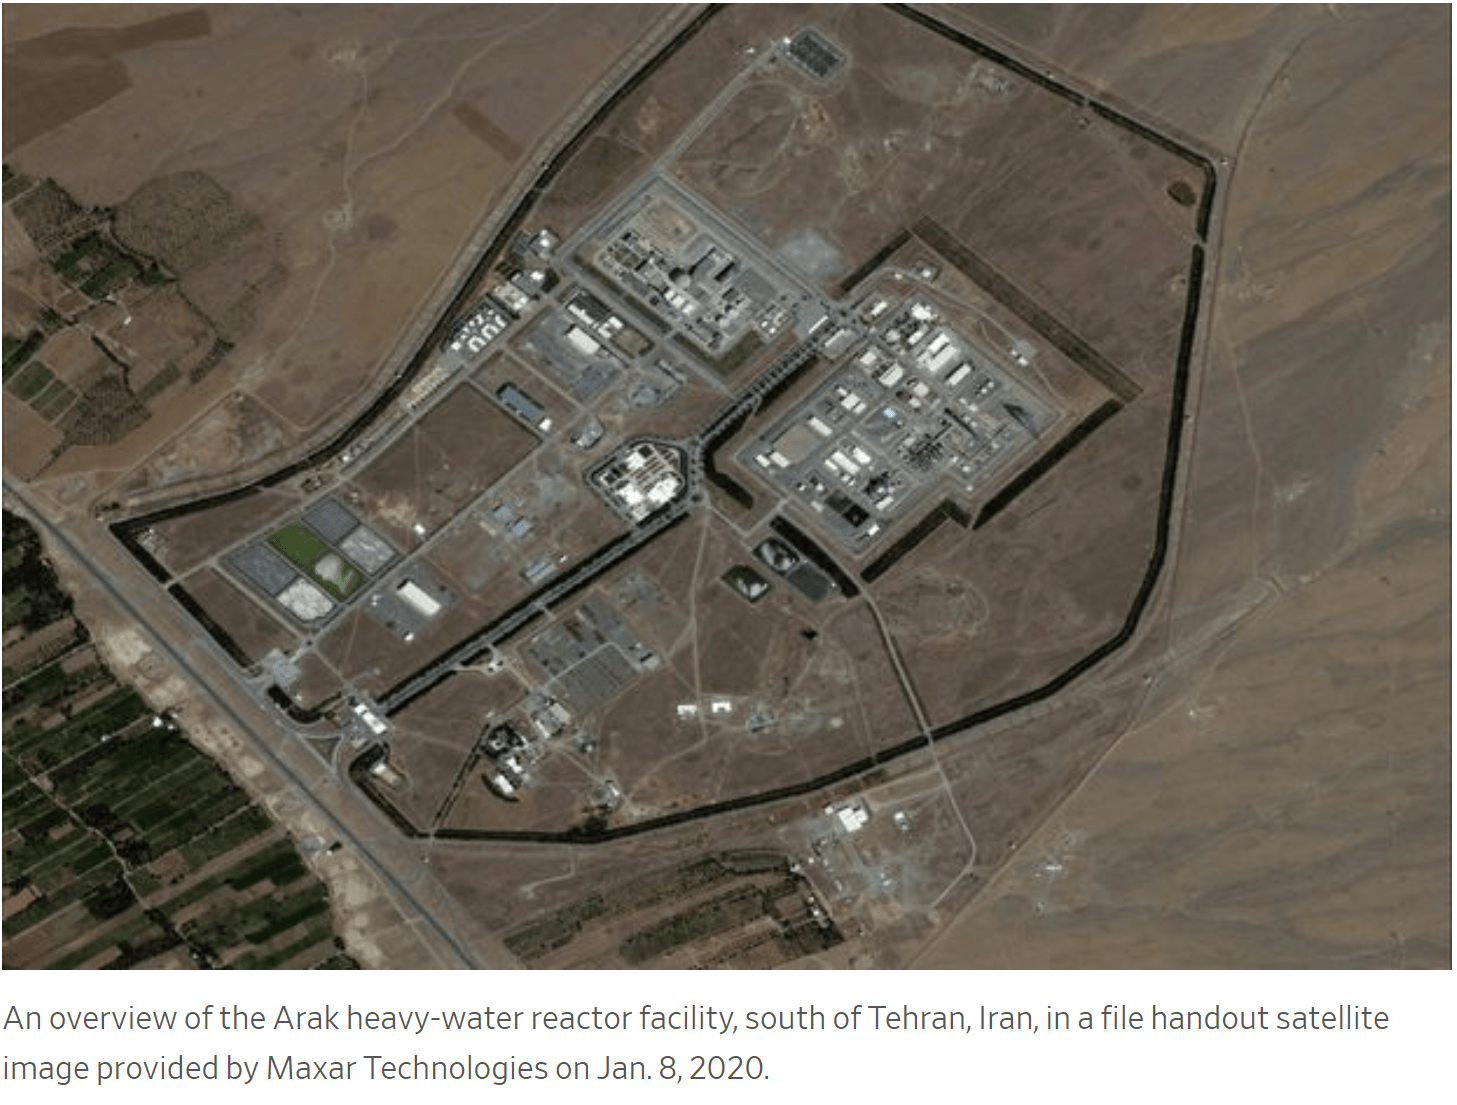 ایران از اسناد محرمانه آژانس بین المللی اتمی برای فرار از تحقیق و بازرسی هسته ای استفاده کرده است